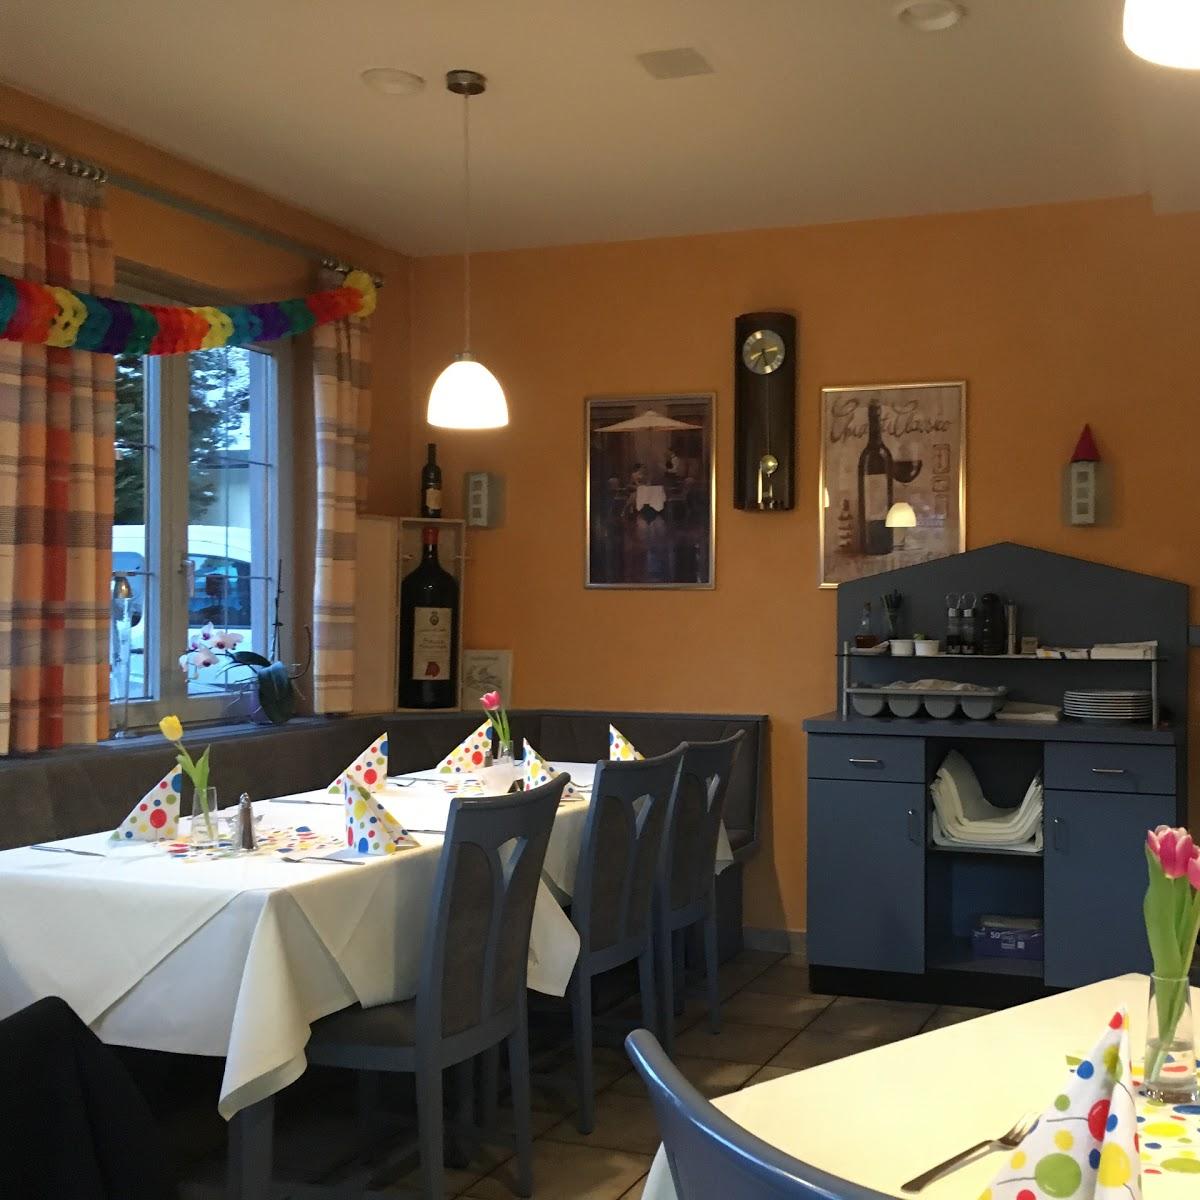 Restaurant "Gasthof Engel" in  Dornstetten